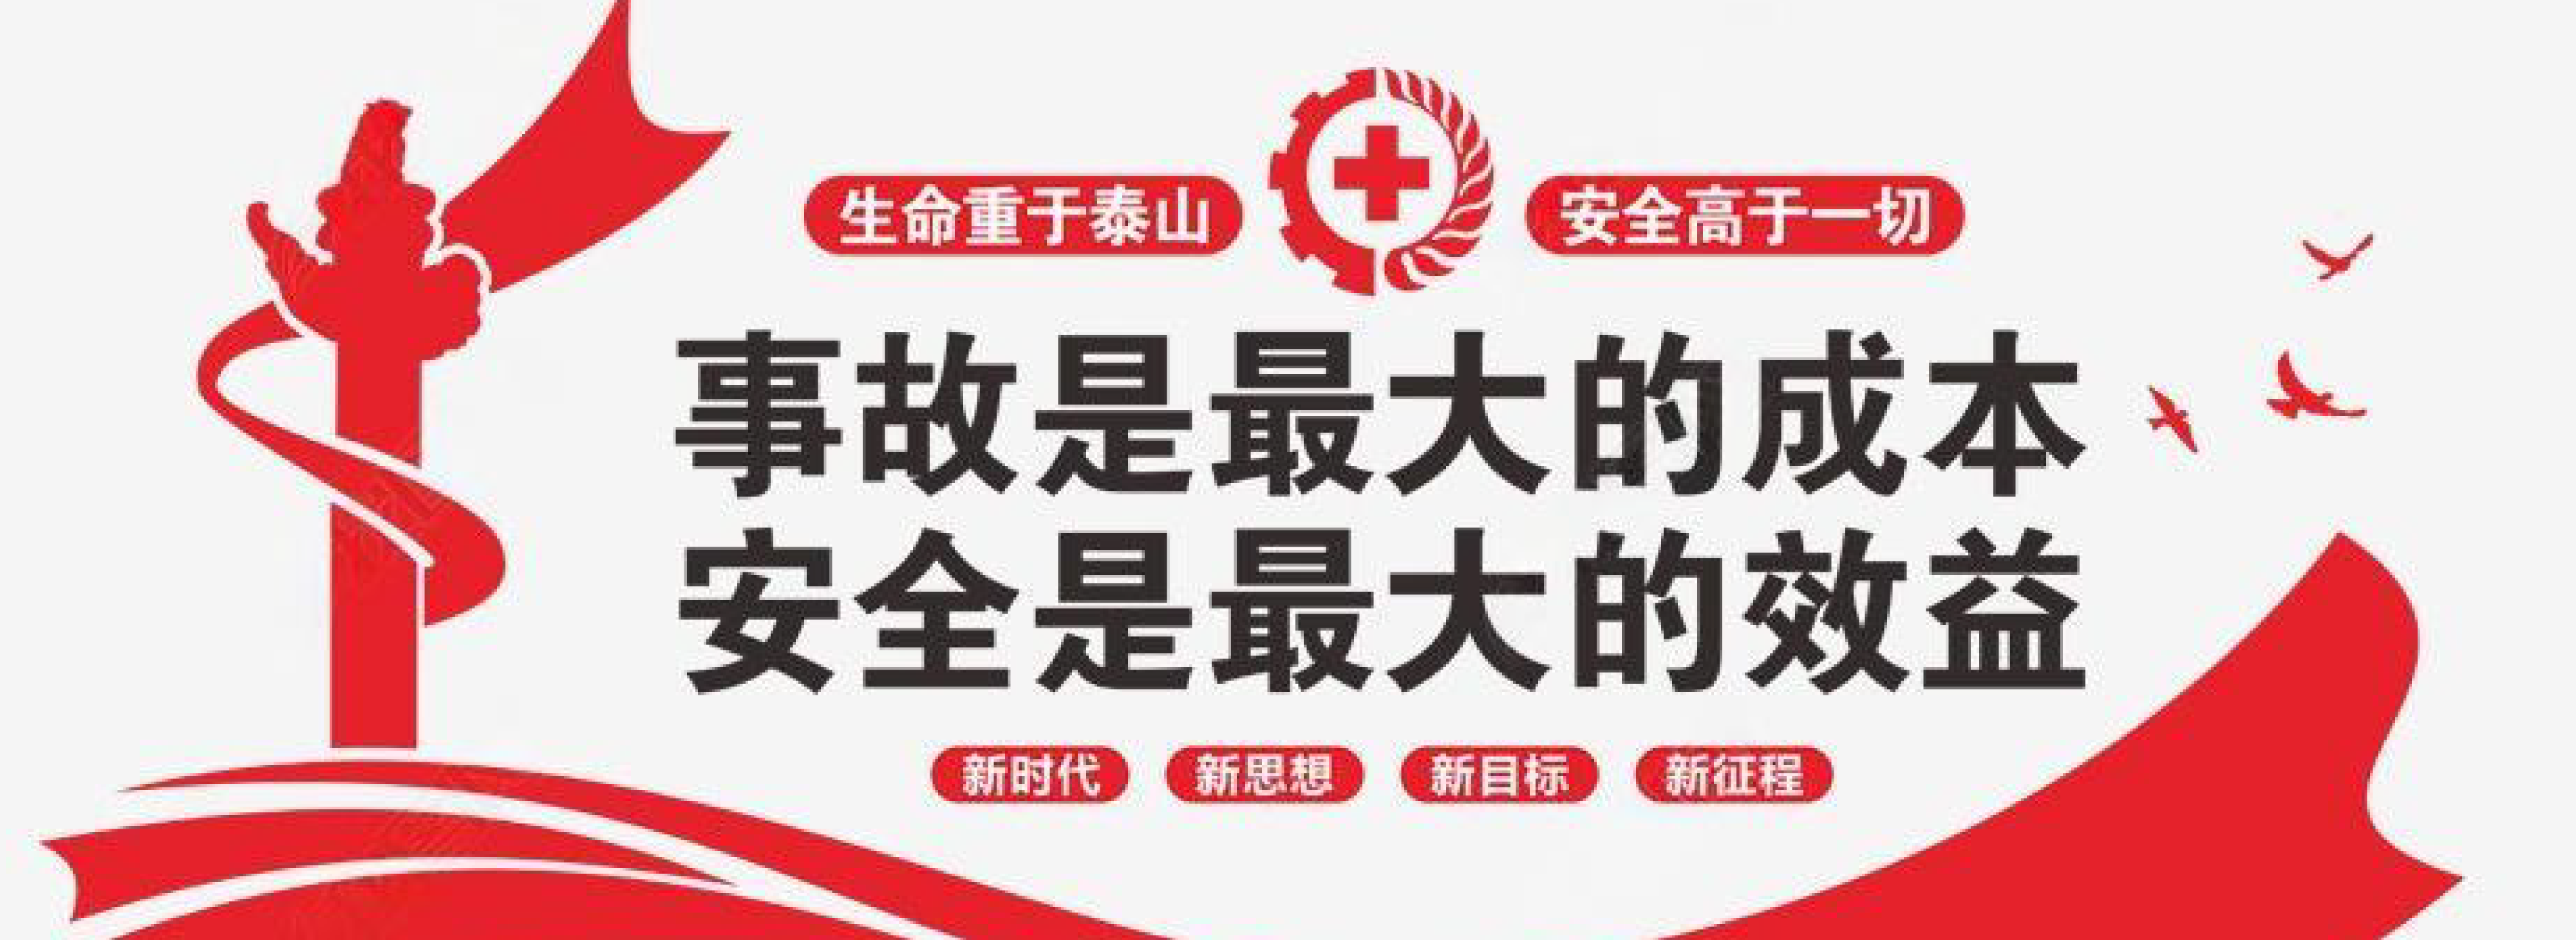 中华人民共和国应急管理部、黑龙江省、铜陵市应急管理厅/局有关安全的部分通知/公告